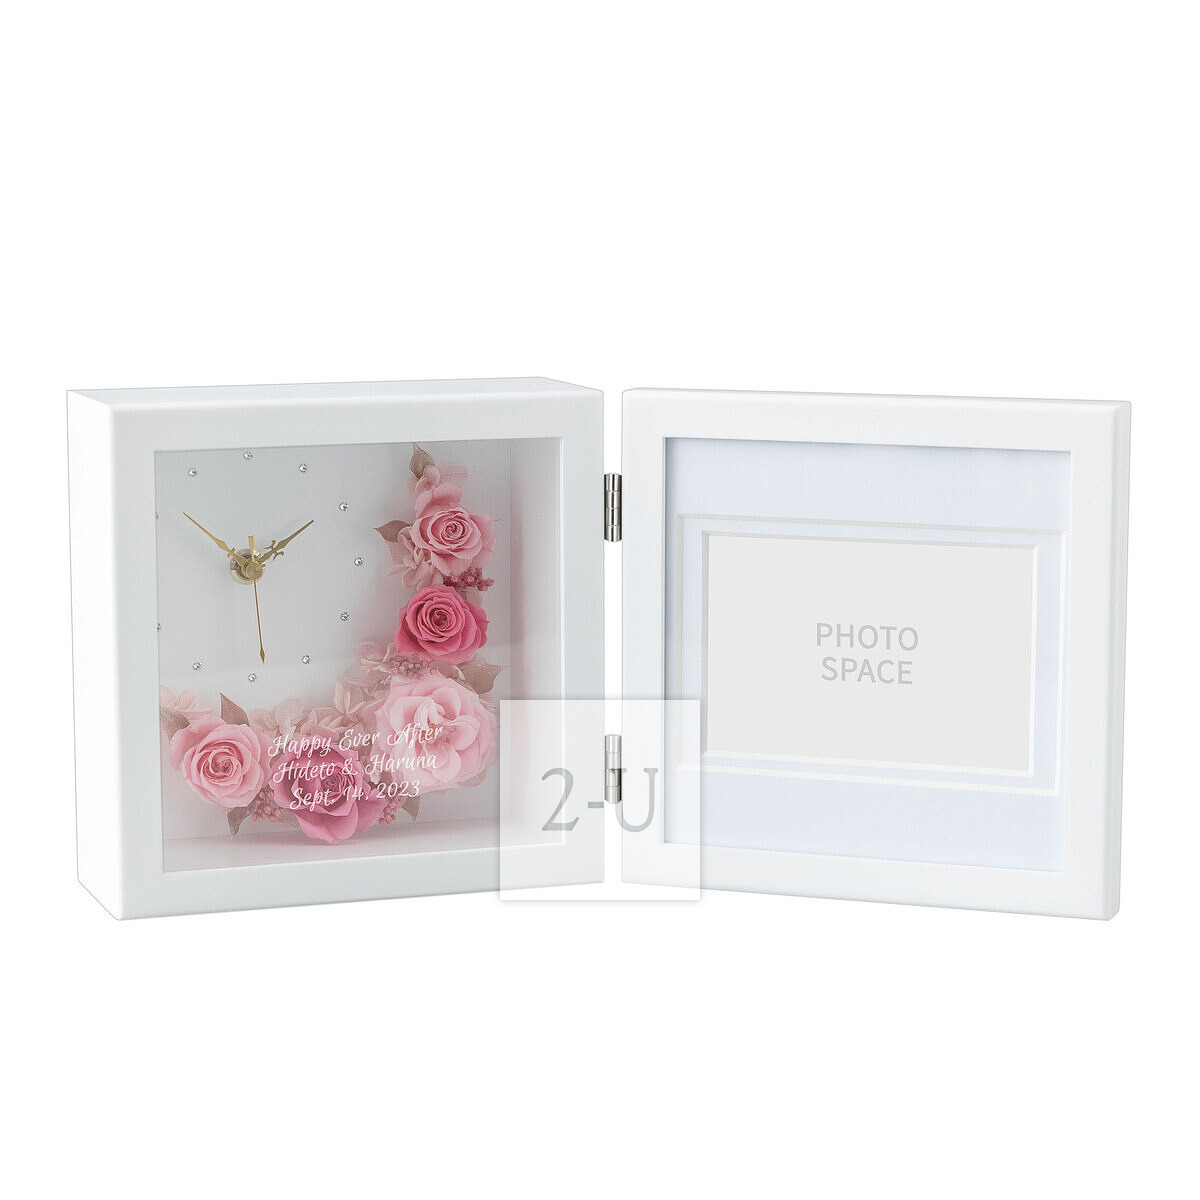 多綵玫瑰保鮮花相框相架帶時鐘 深淺粉色玫瑰